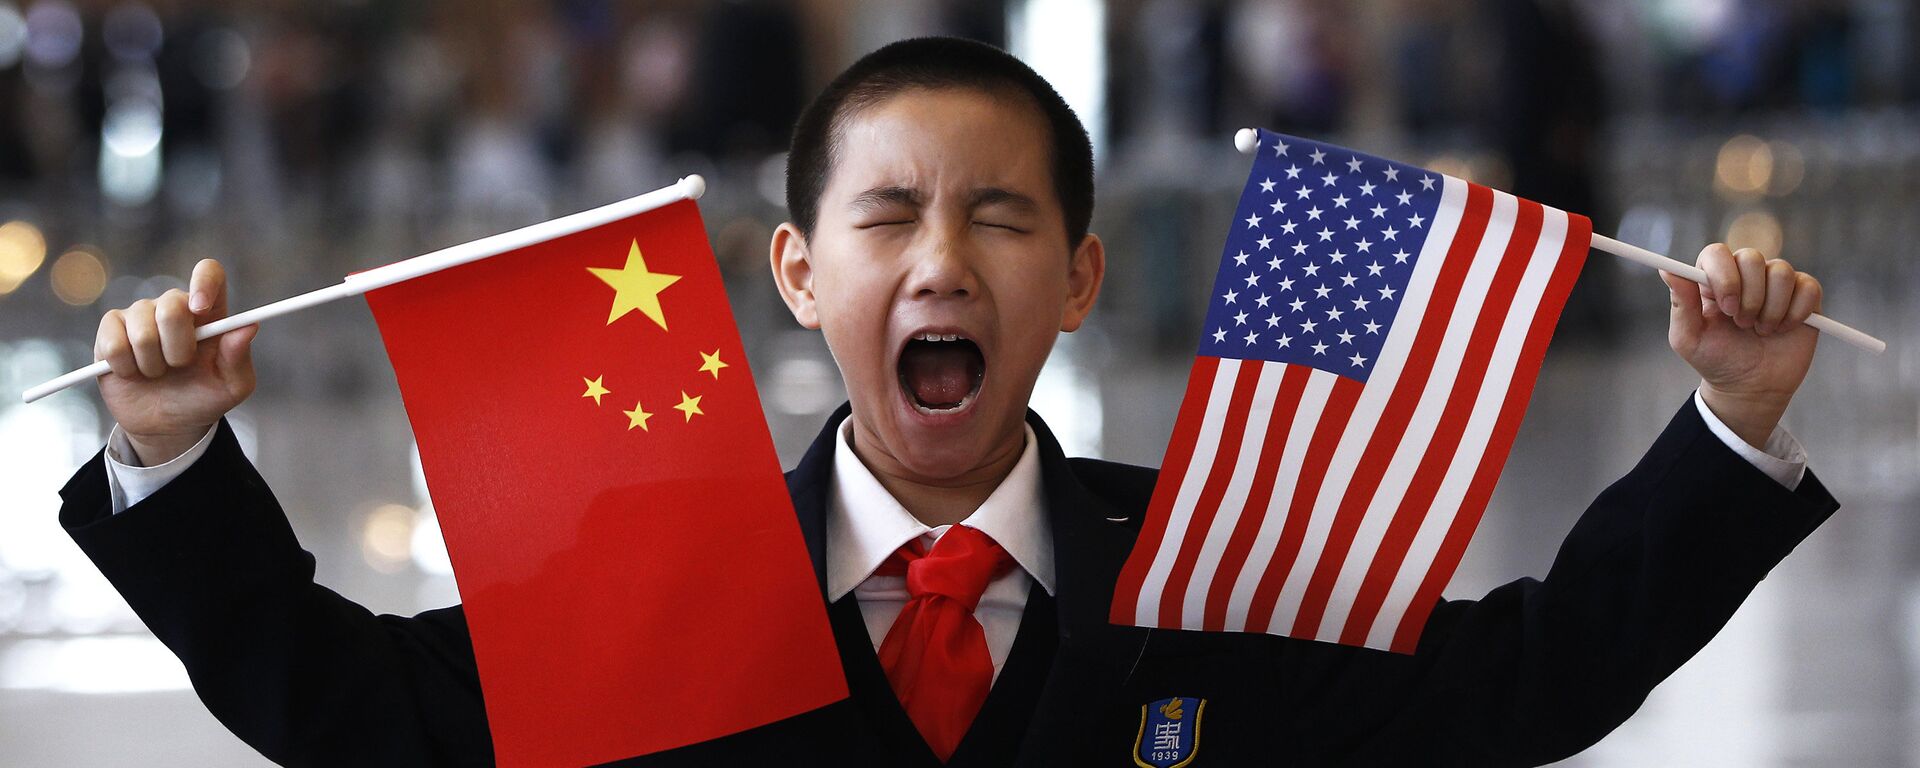 Cậu bé cầm cờ Trung Quốc và Mỹ tại Bắc Kinh - Sputnik Việt Nam, 1920, 26.07.2021